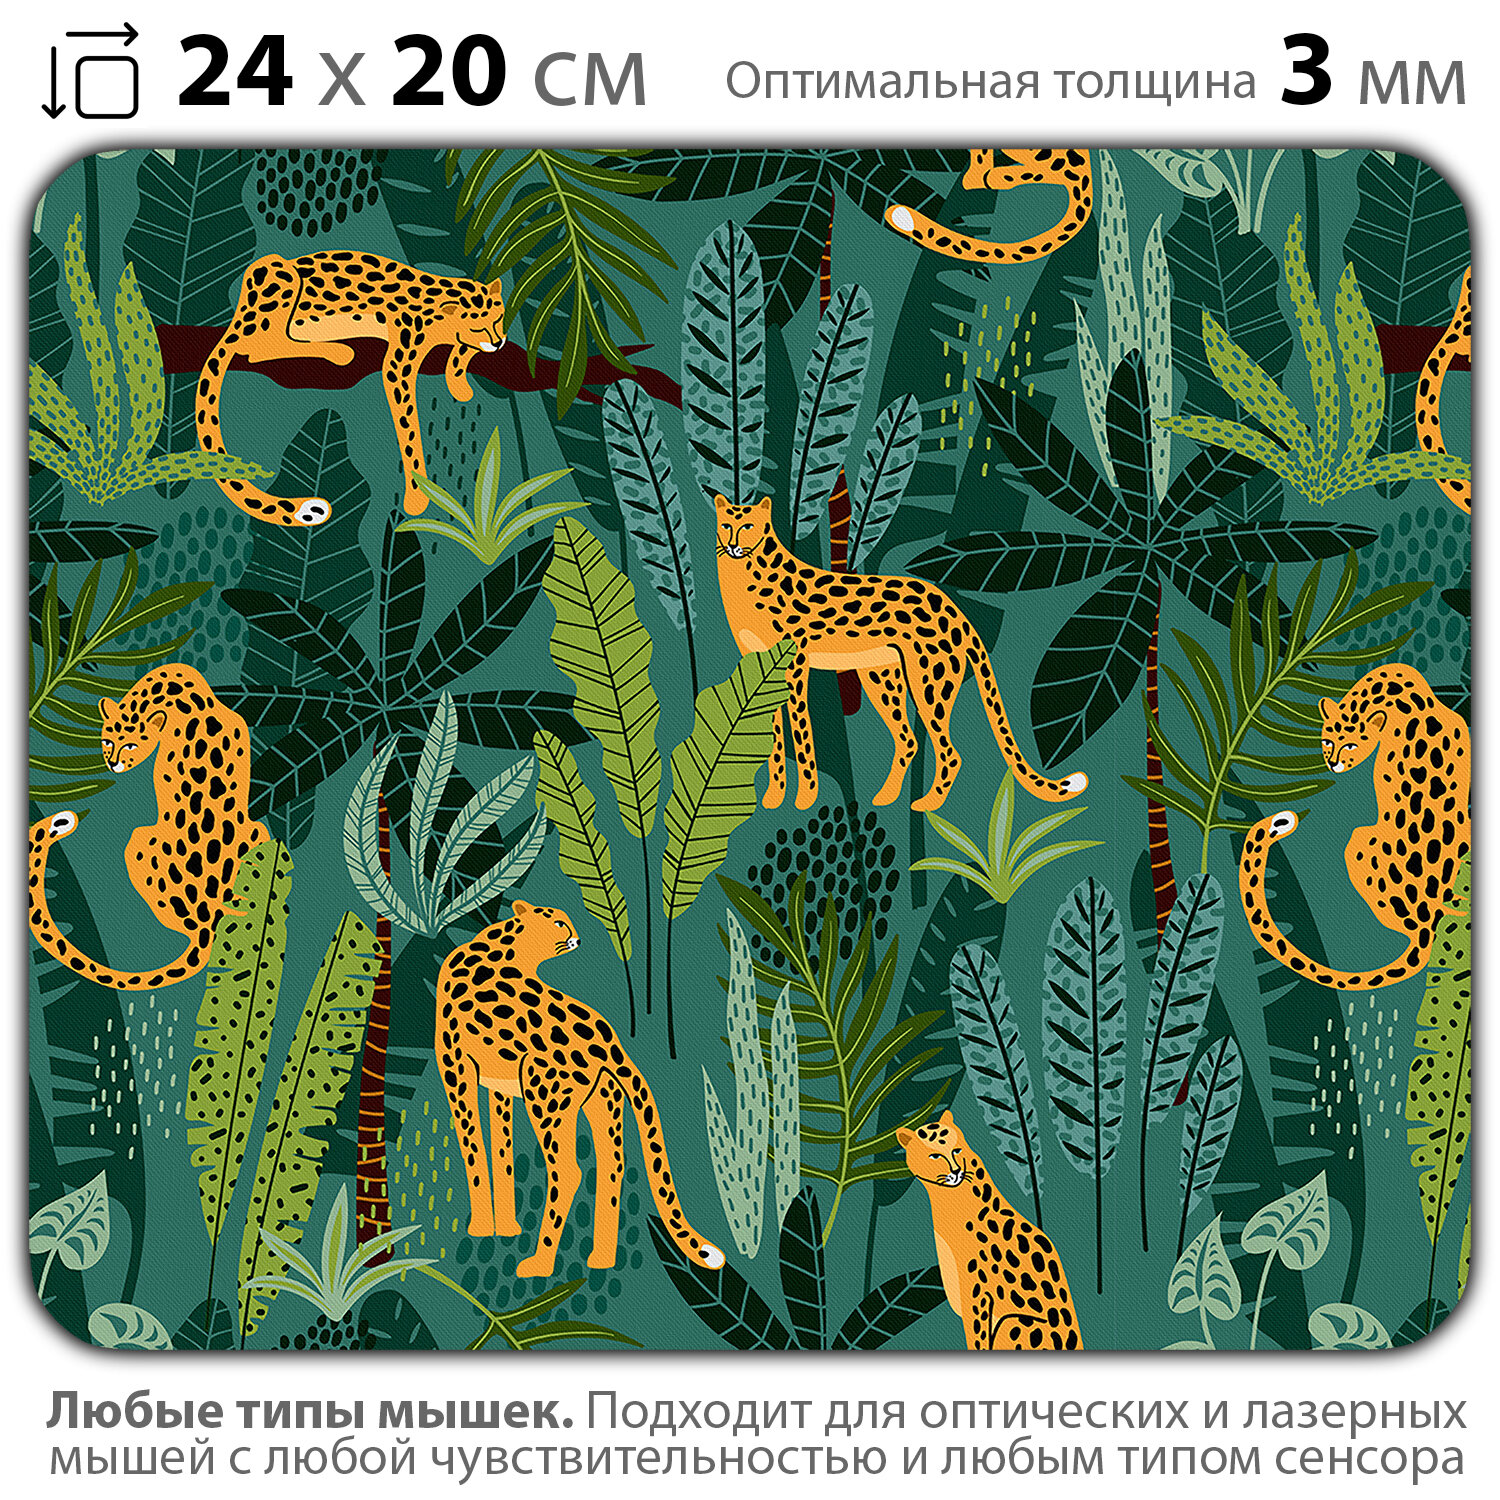 Коврик для мыши "Леопарды в джунглях" (24 x 20 см x 3 мм)